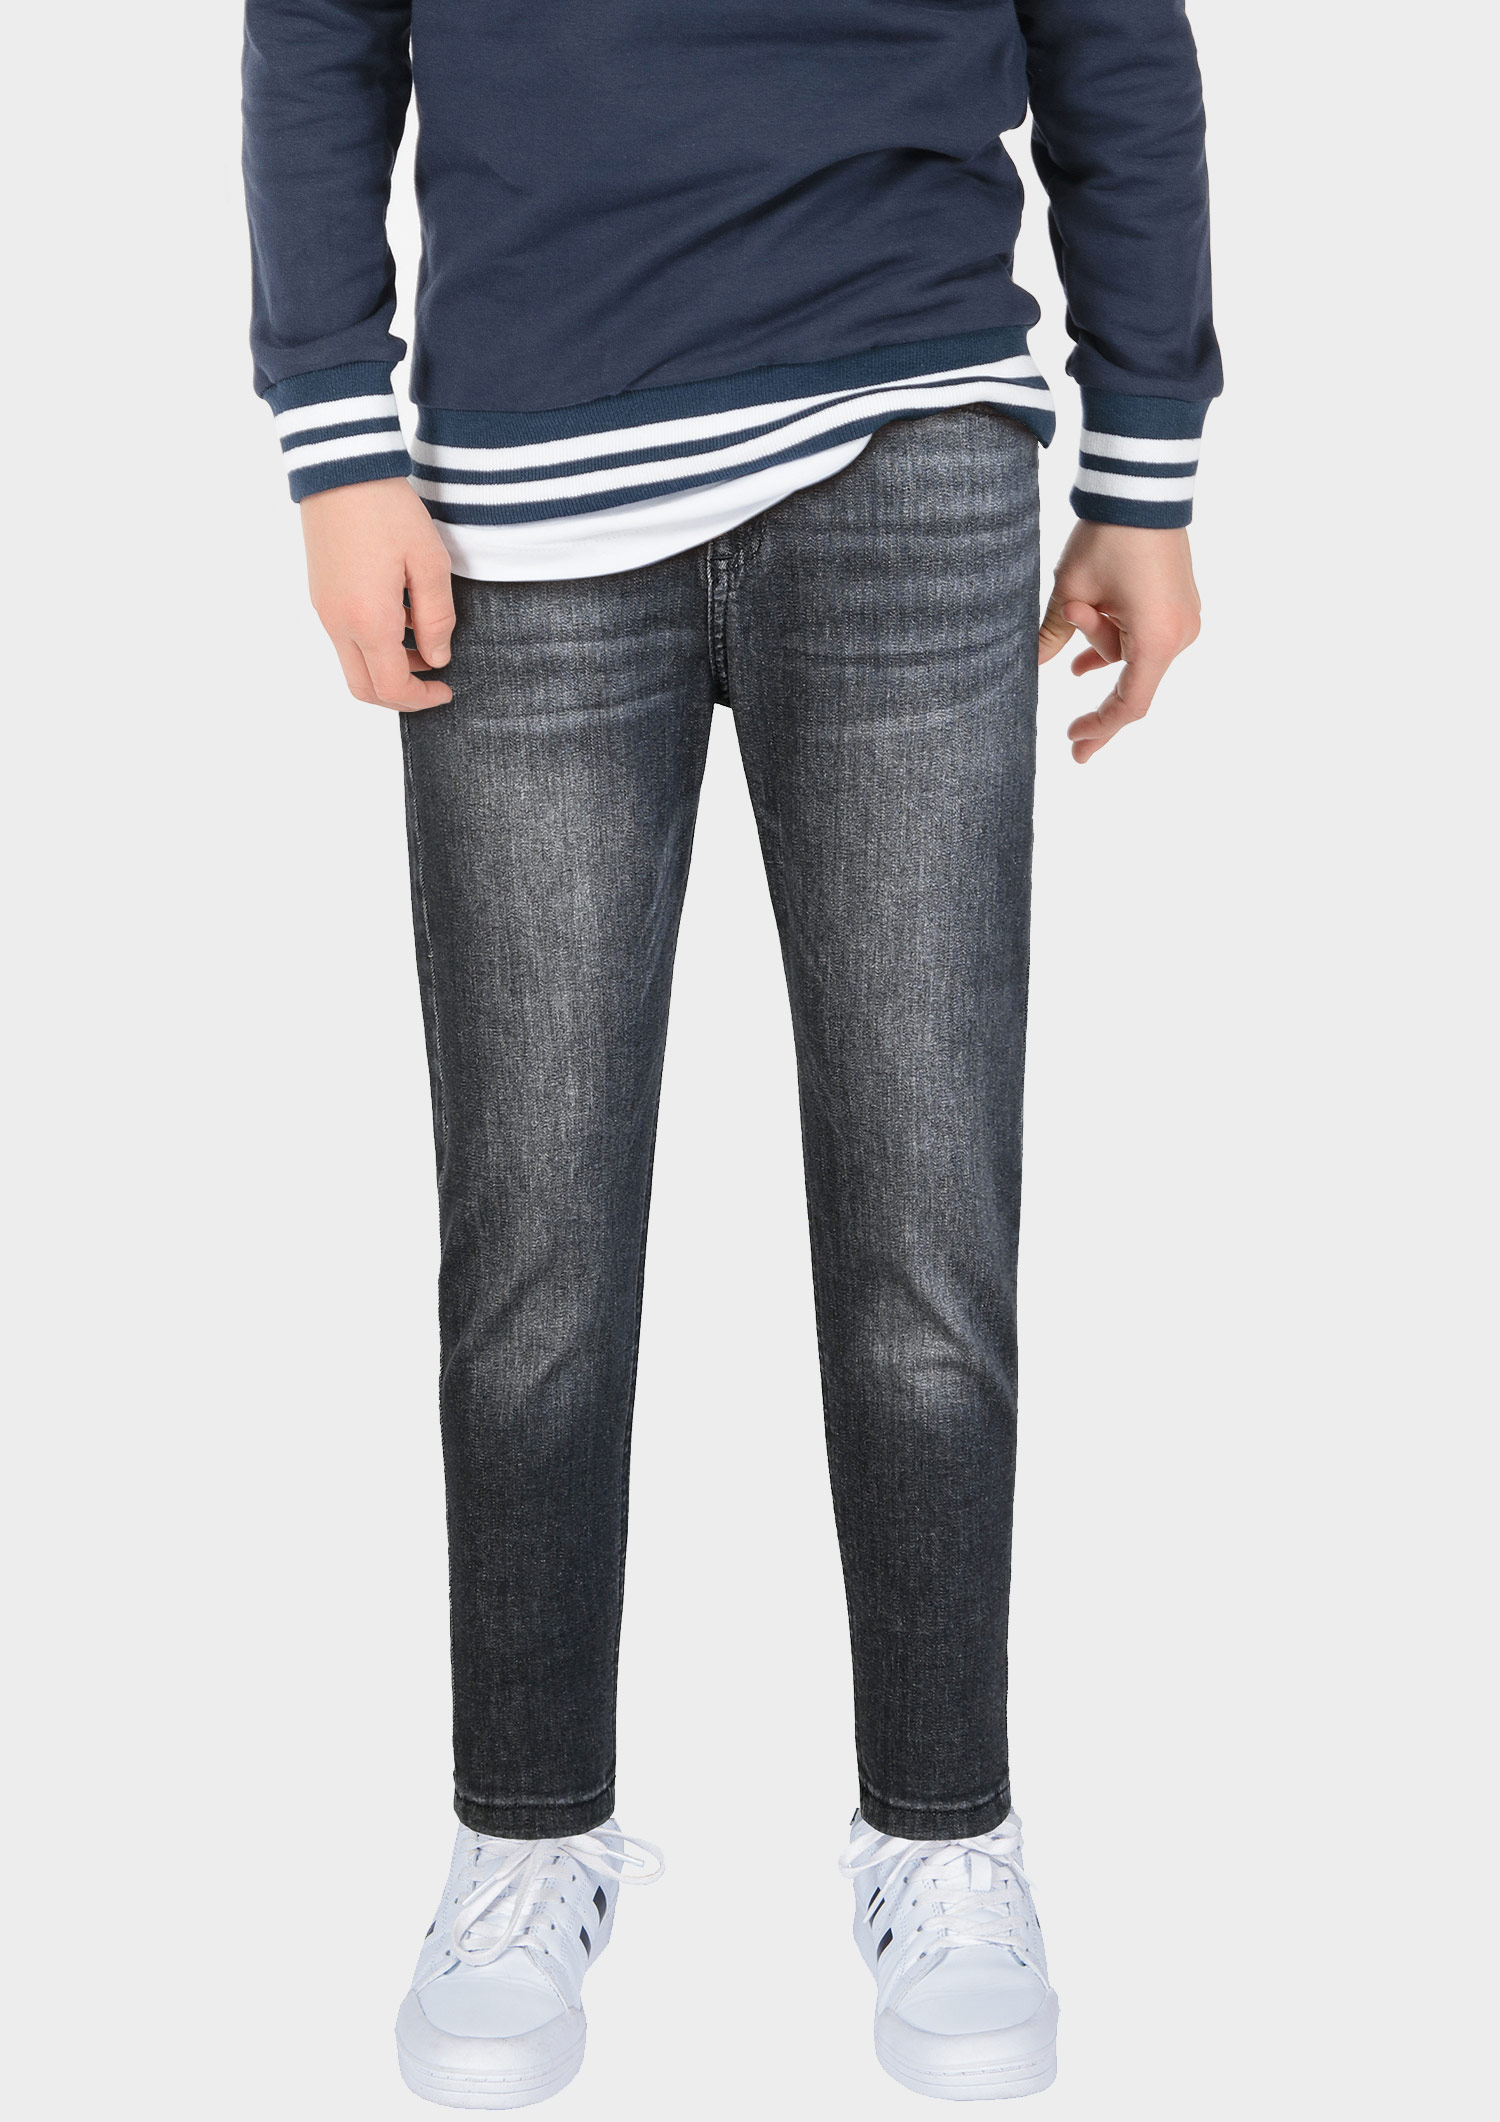 2813-NOS Boys Loose Fit Jeans verfügbar in Slim,Normal